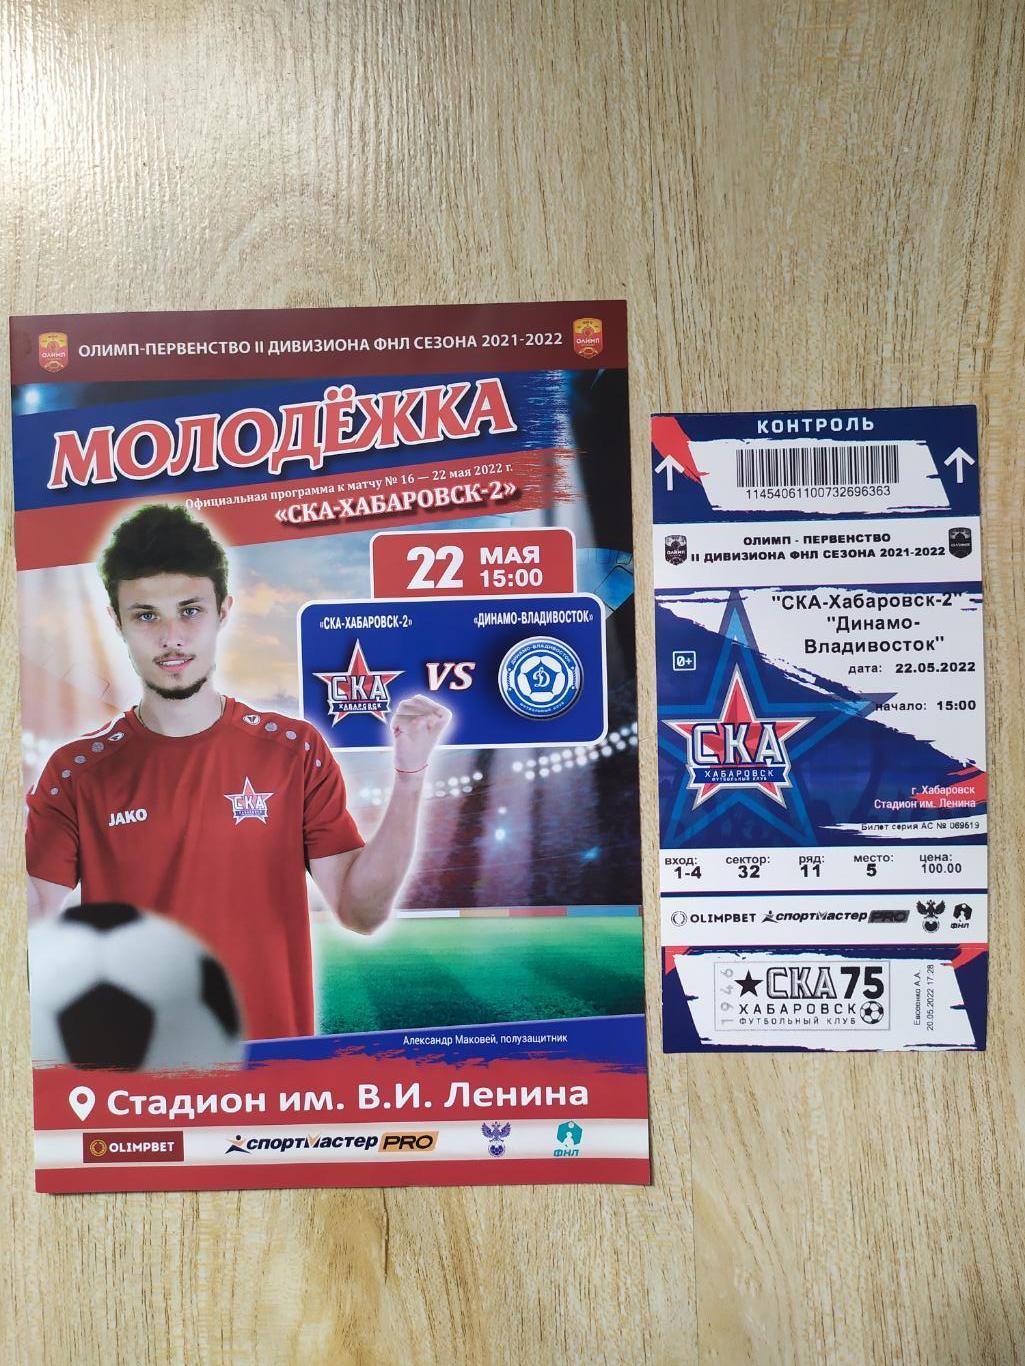 СКА 2(Хабаровск) - Динамо(Владивосток) ФНЛ 2. 22/05/2022 + билет.